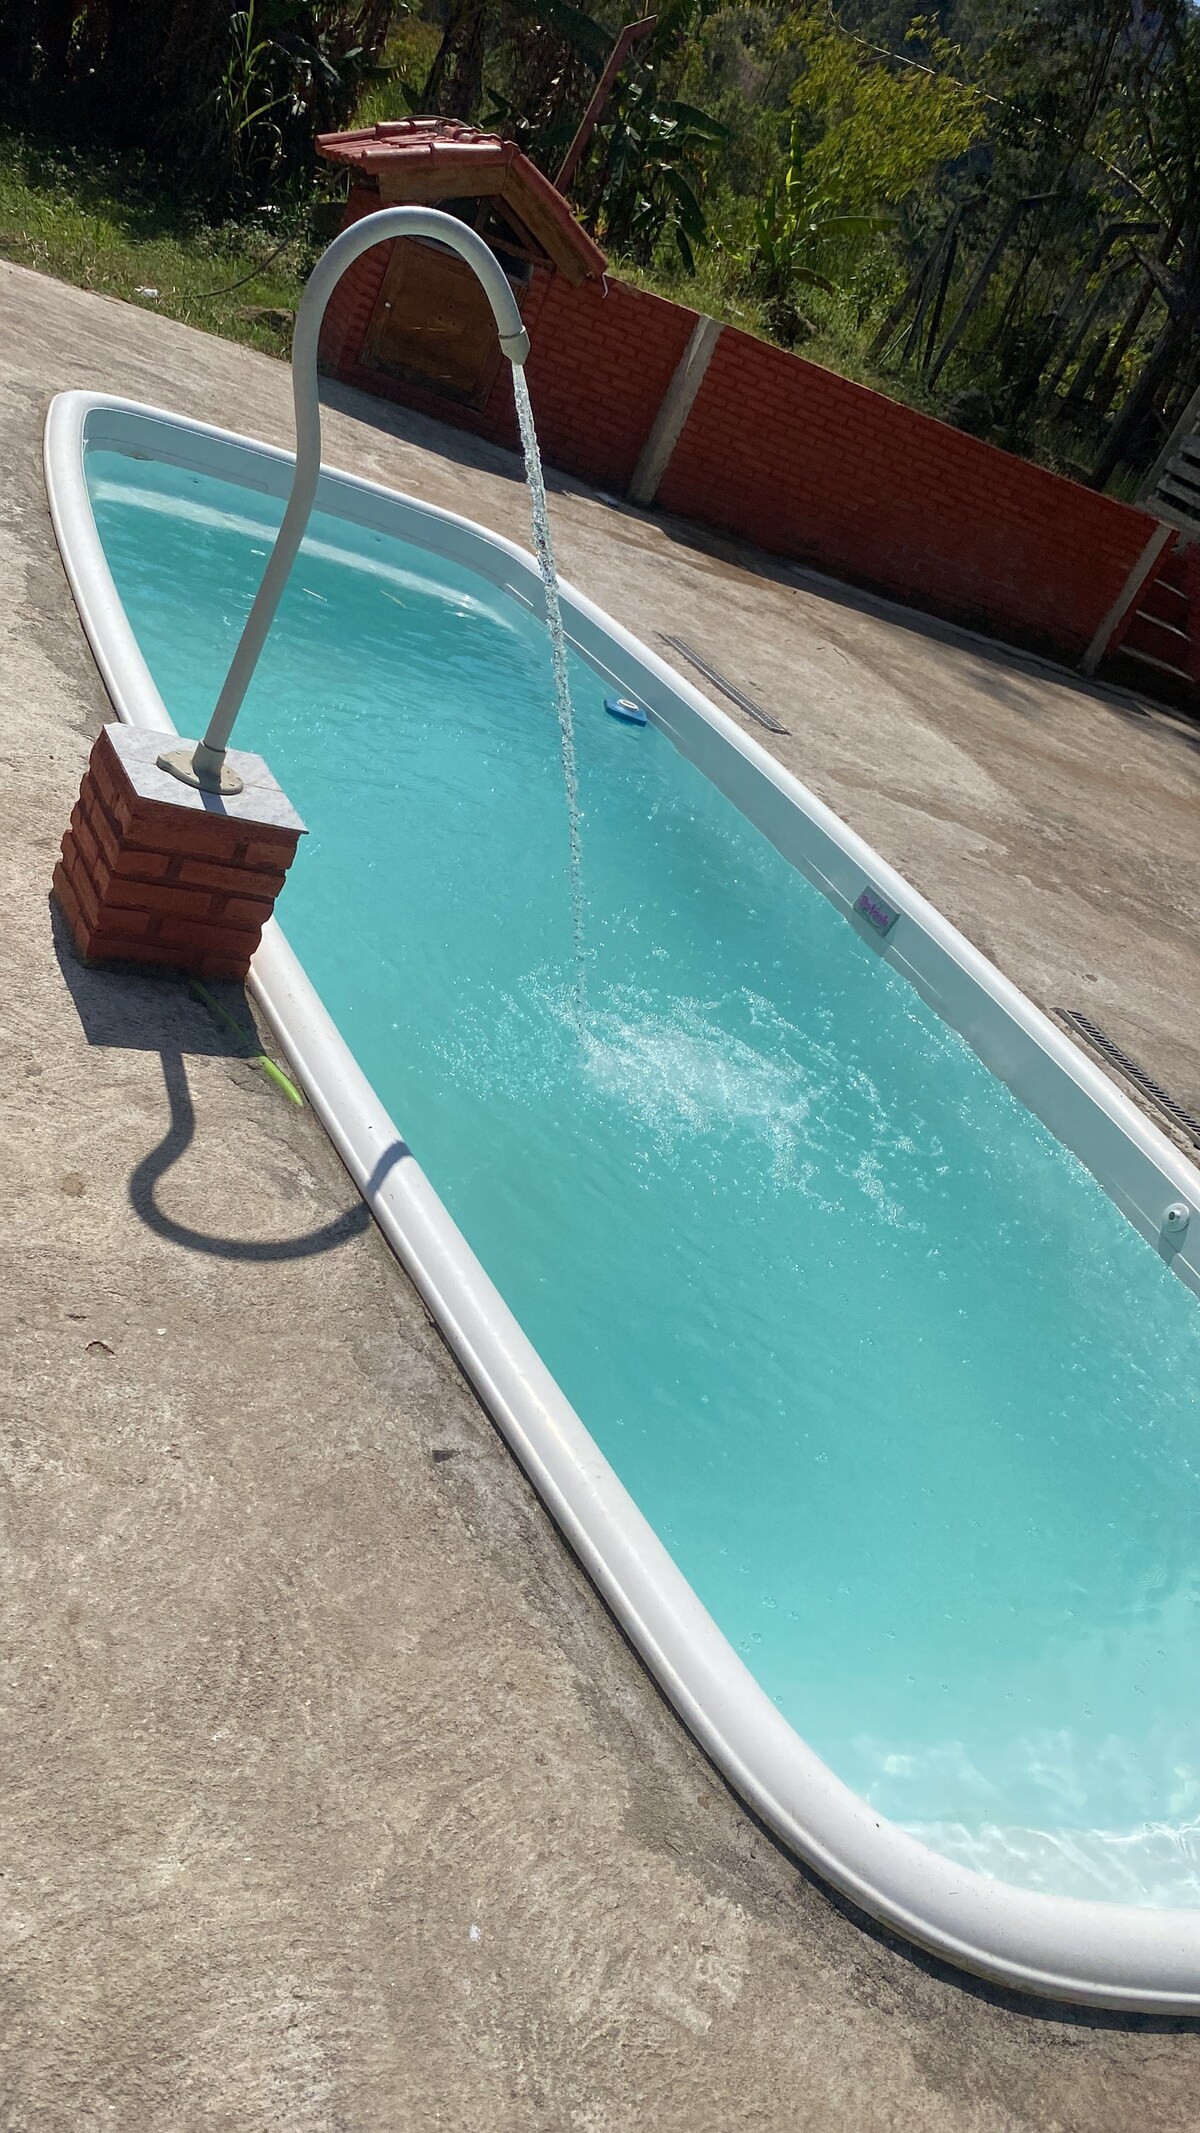 Chácara com piscina, natividade da serra-sp